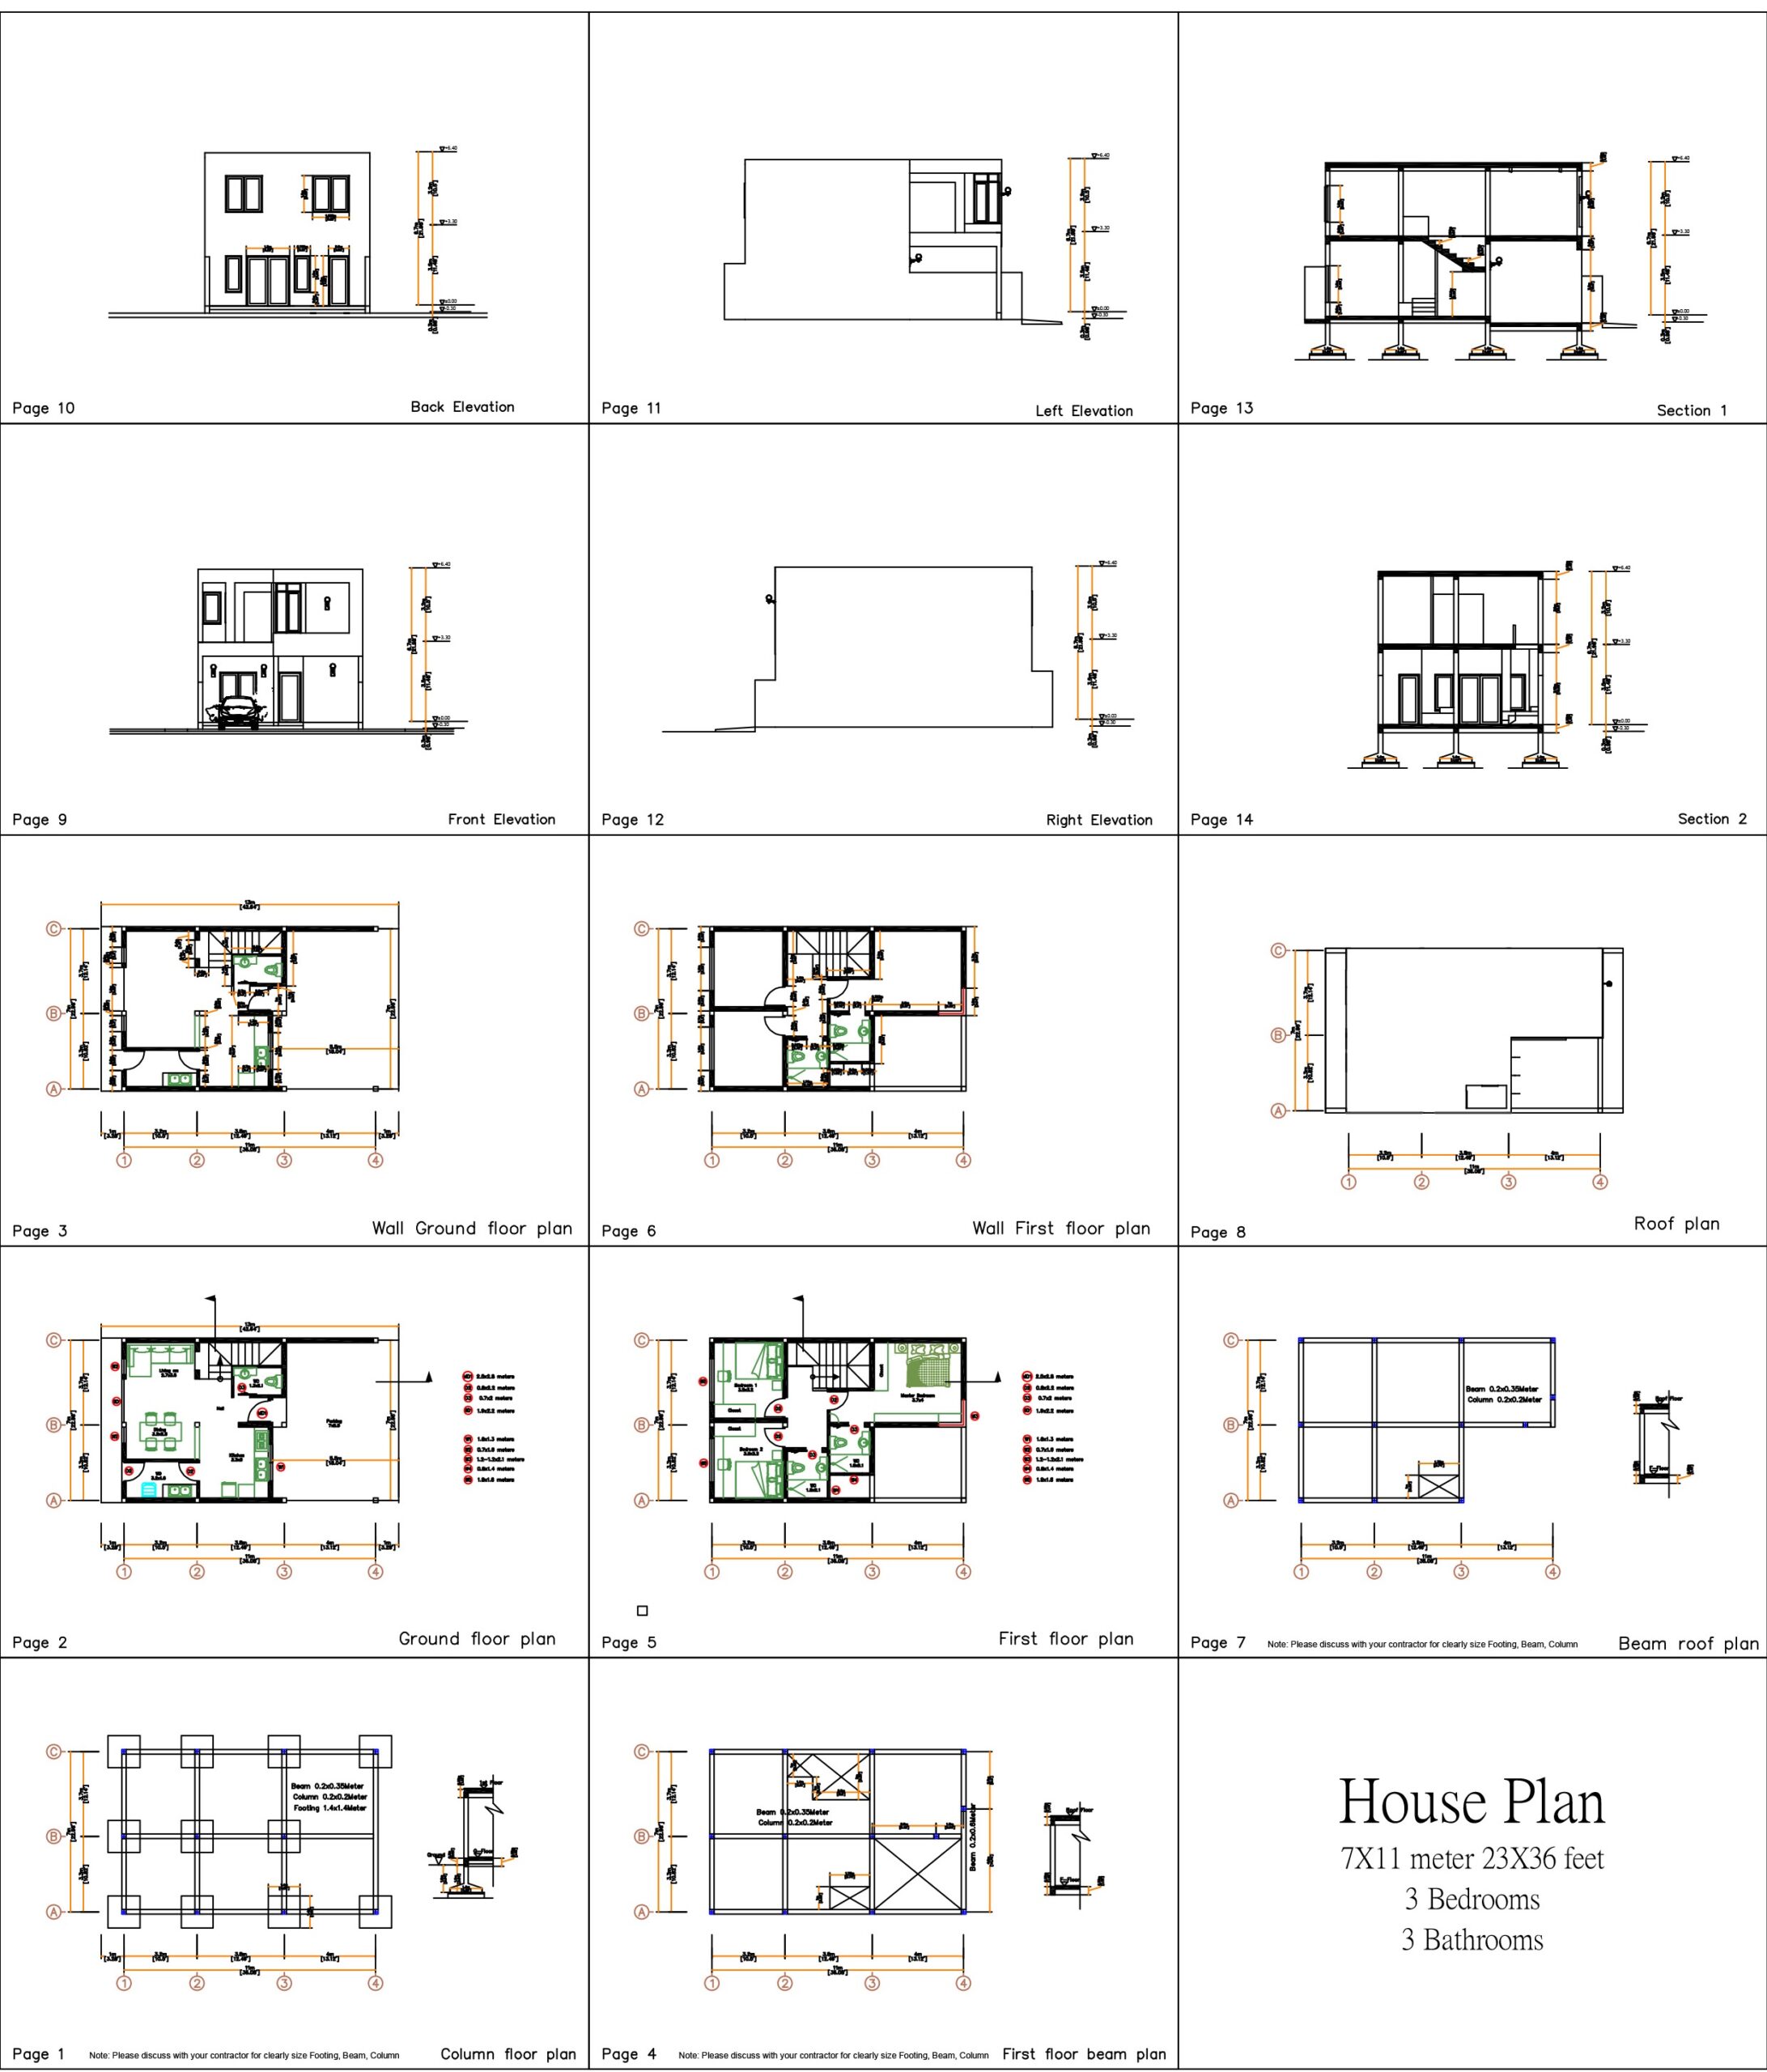 House Desing Plan 7x11 Meter 23x36 Feet 3 Bedrooms PDF Full Plan all